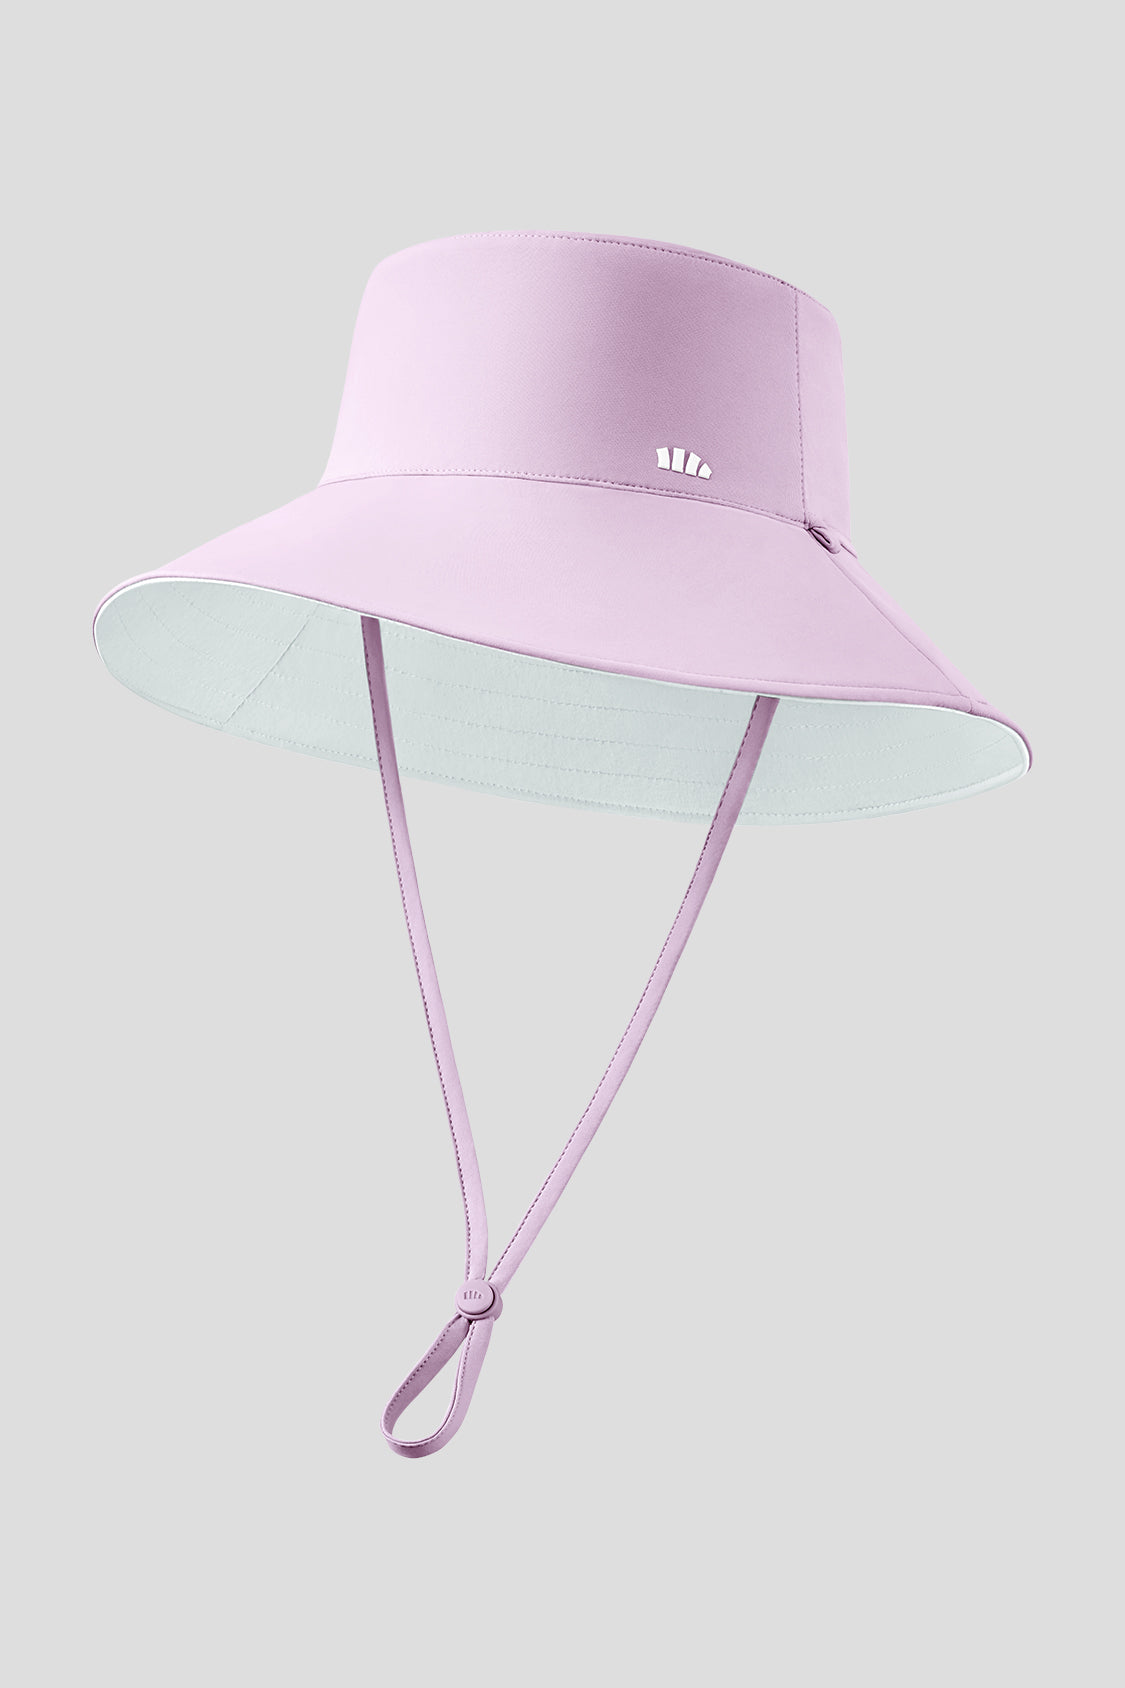 Rever - Women's Sun Hats UPF50+